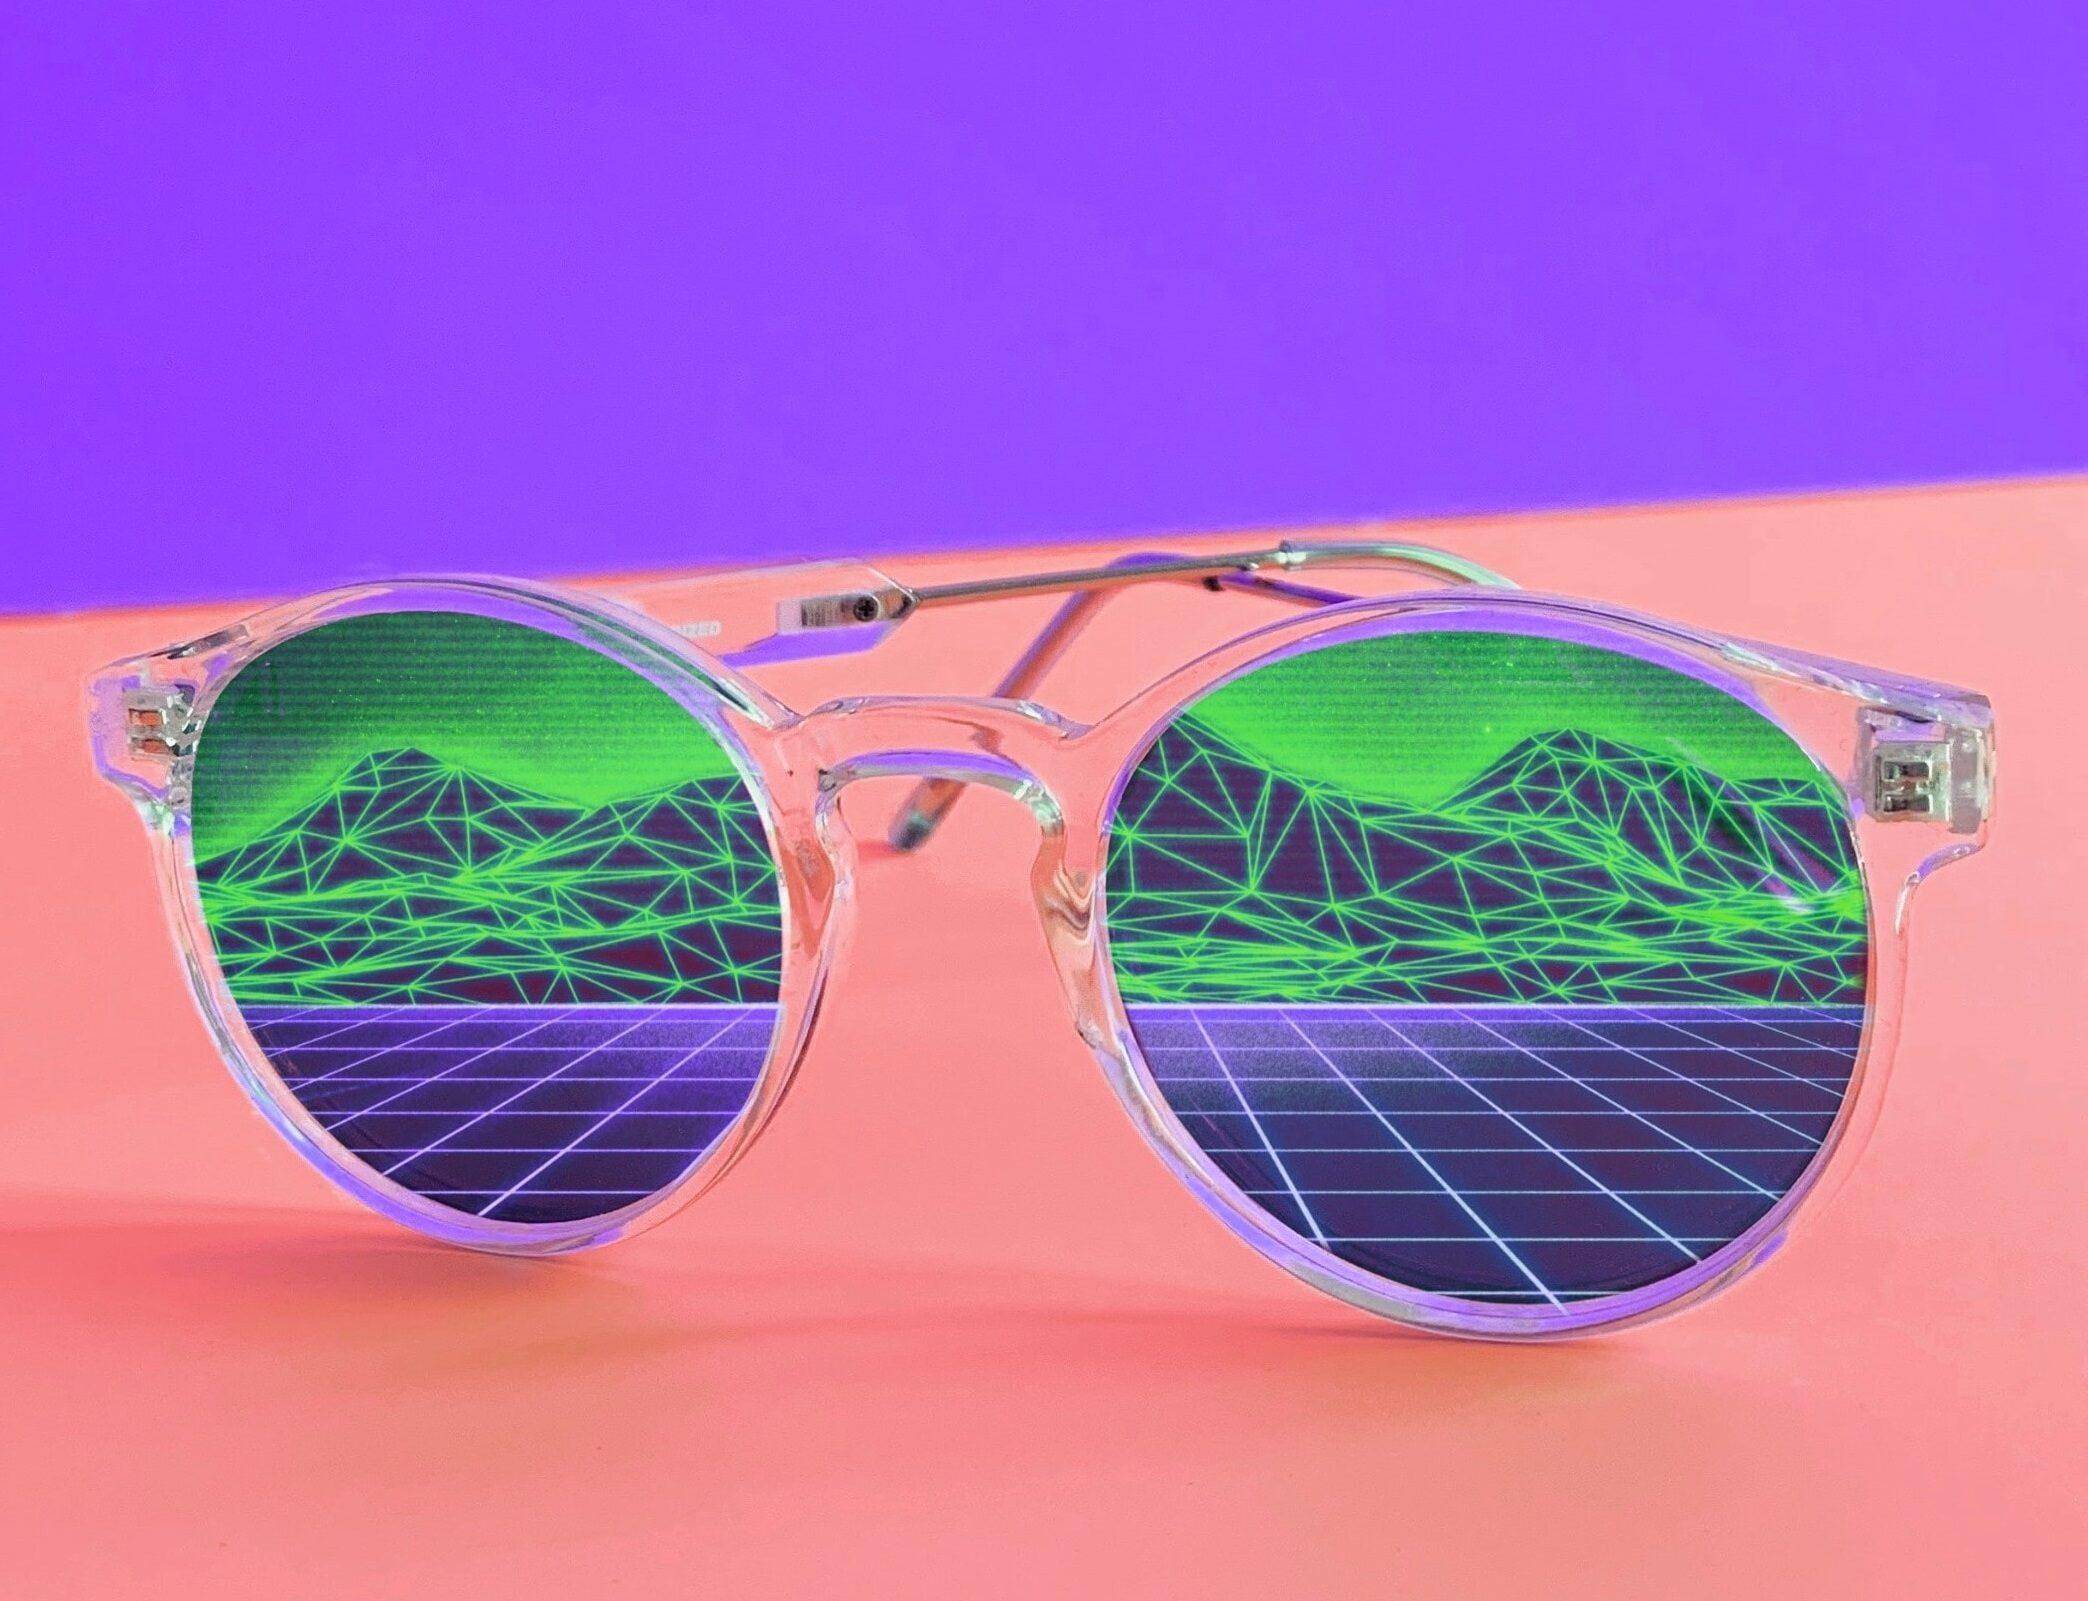 Sonnenbrille mit Spiegelung einer Landschaft